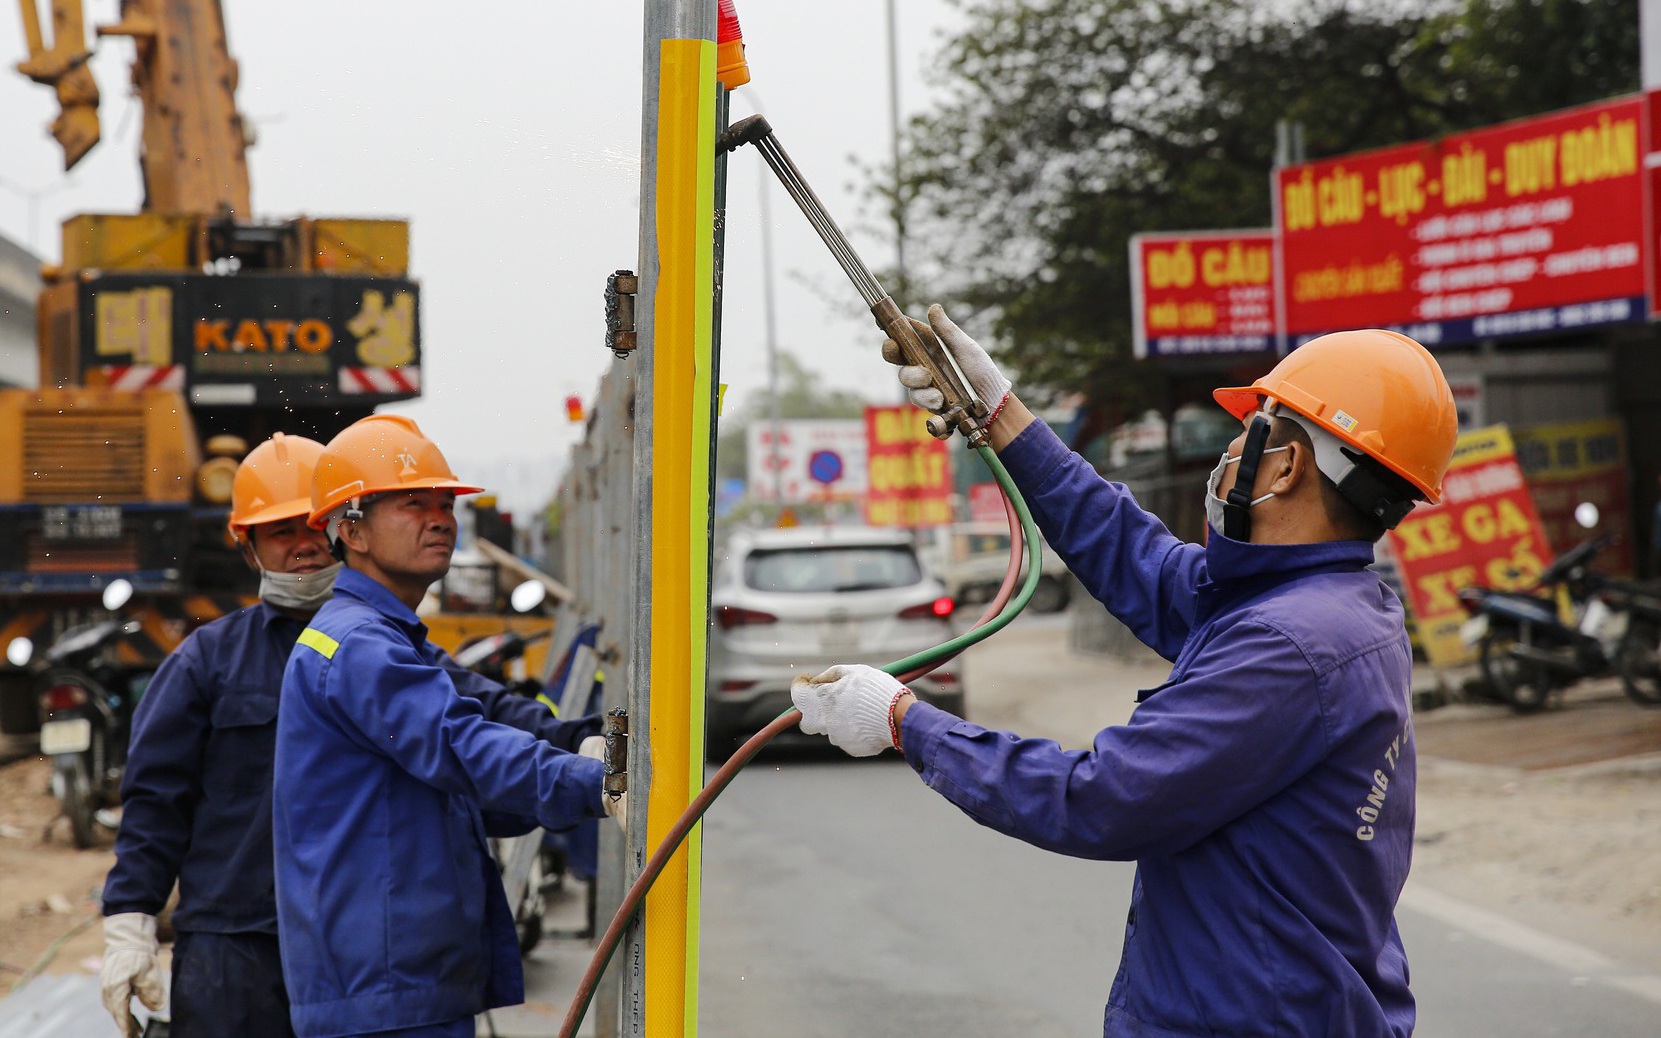 Con đường Nguyễn Xiển ùn tắc triền miên ở Hà Nội được xén dải phân cách